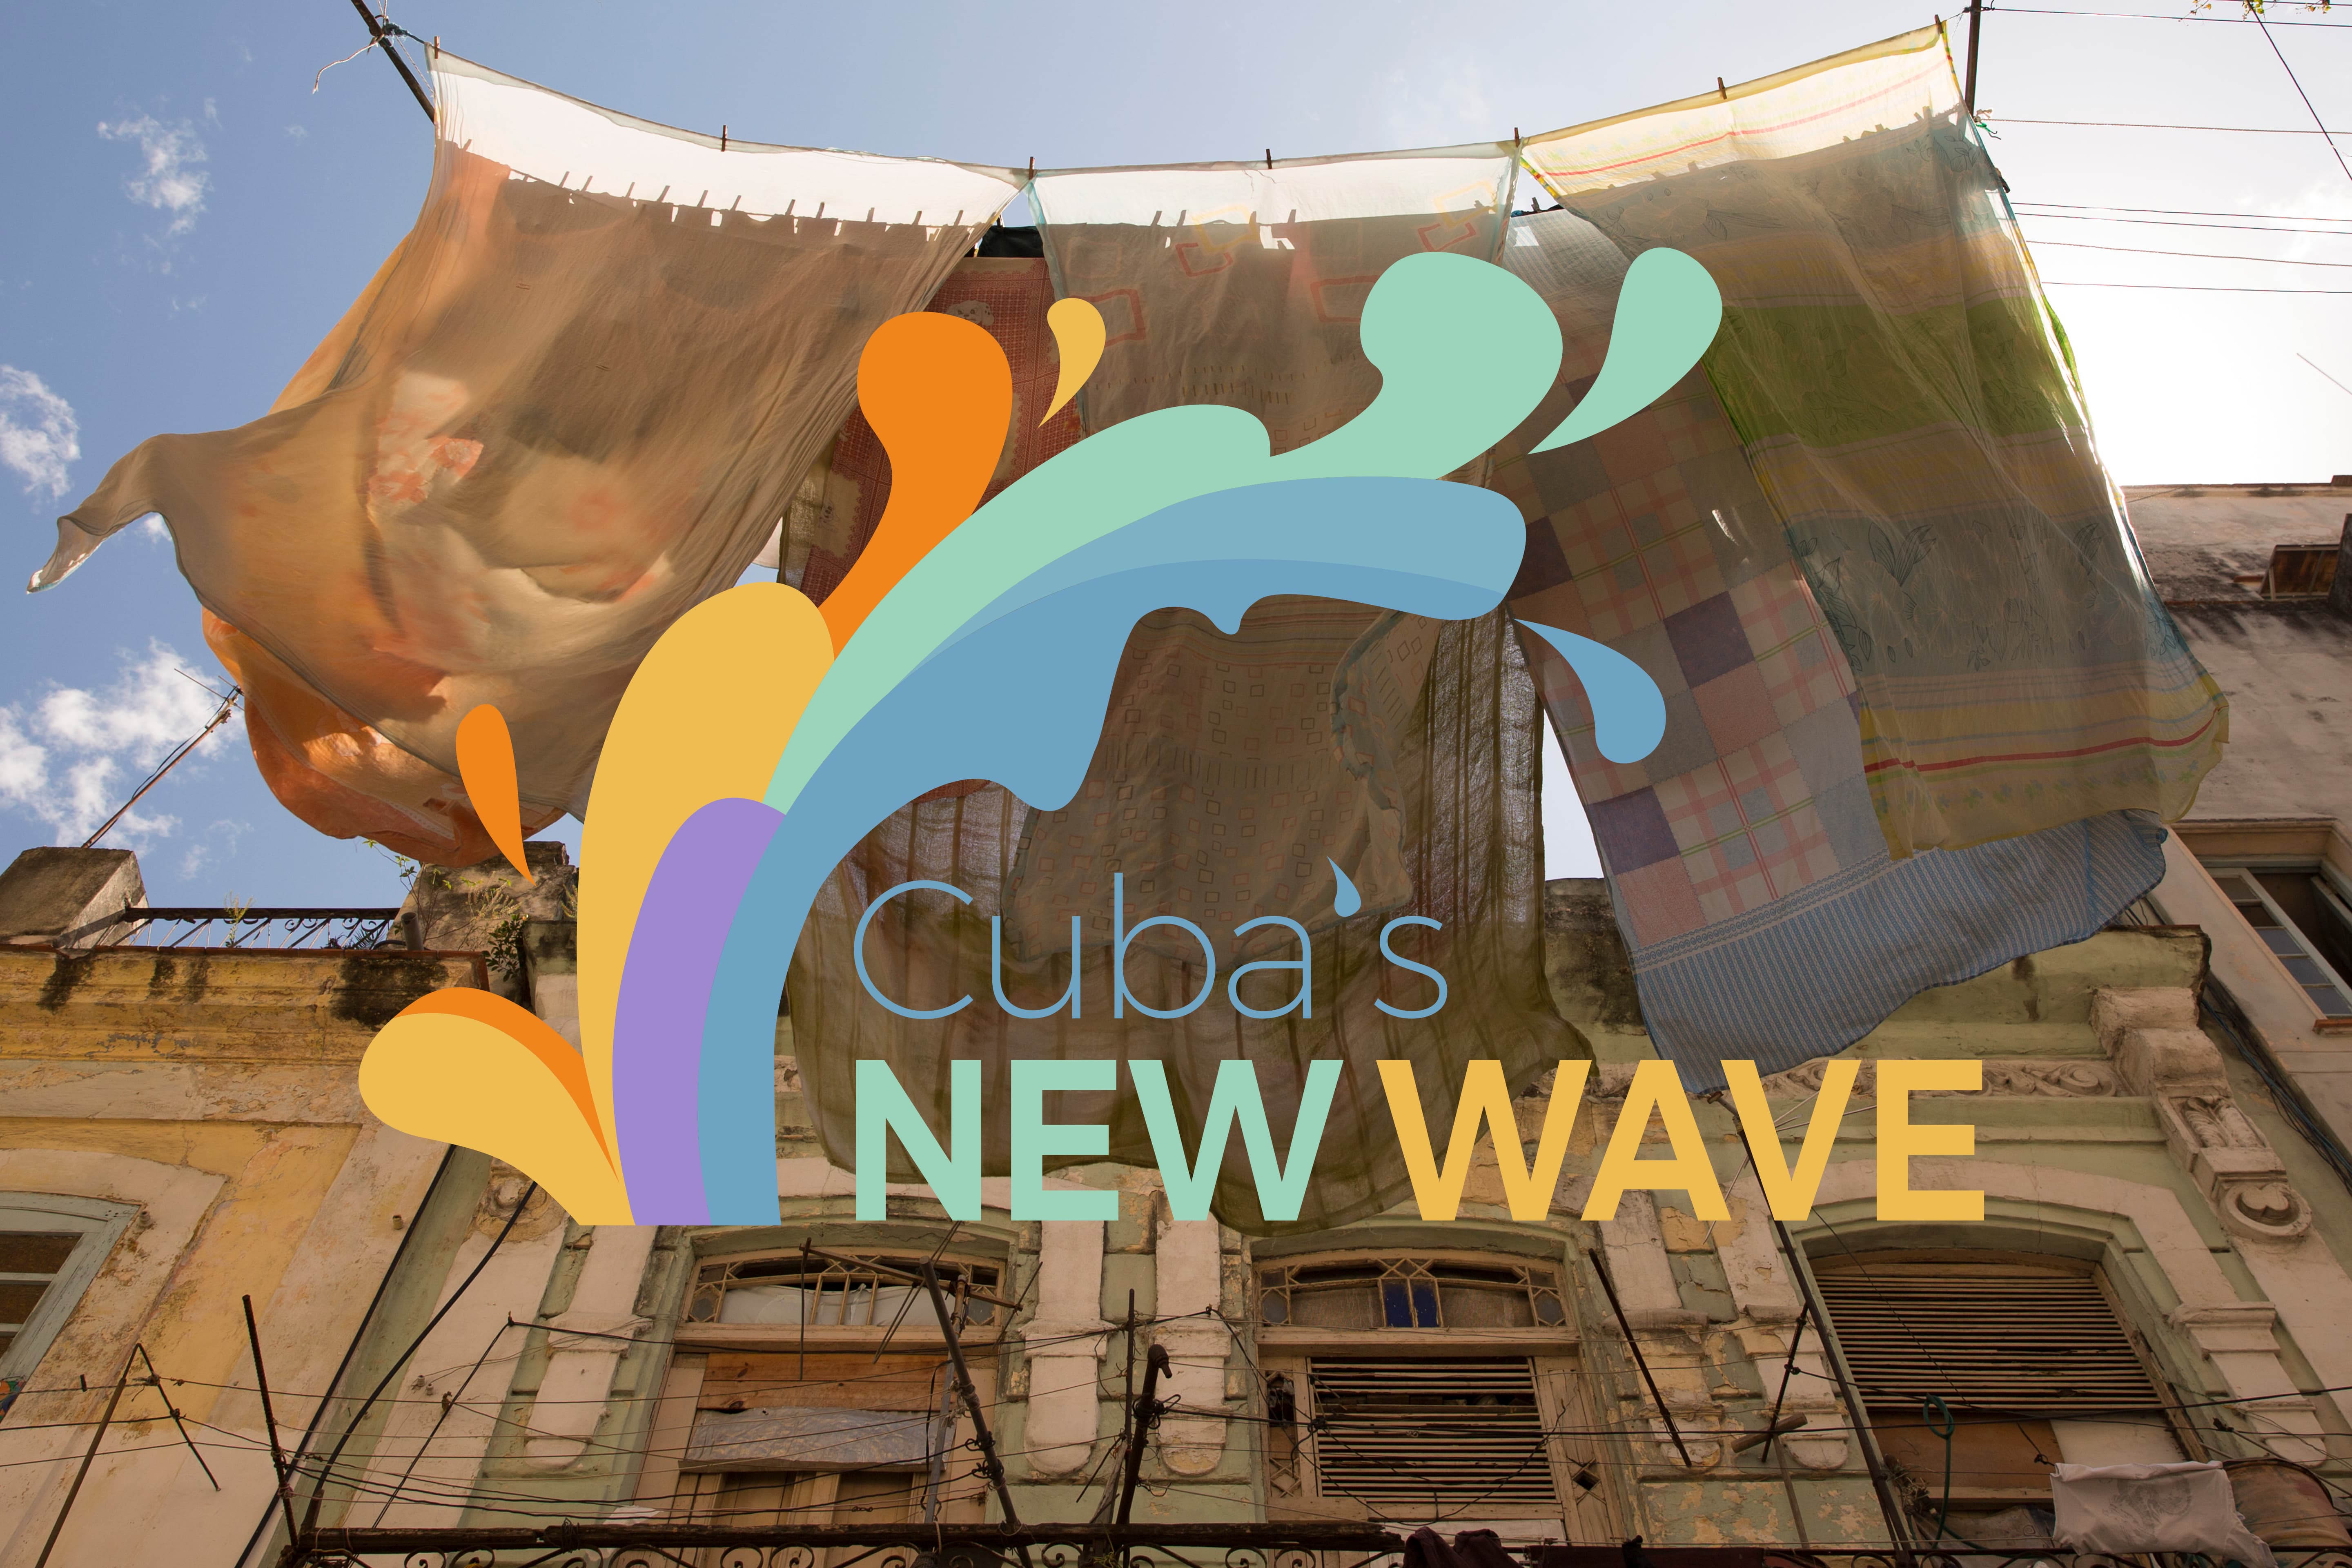 Cuba's New Wave